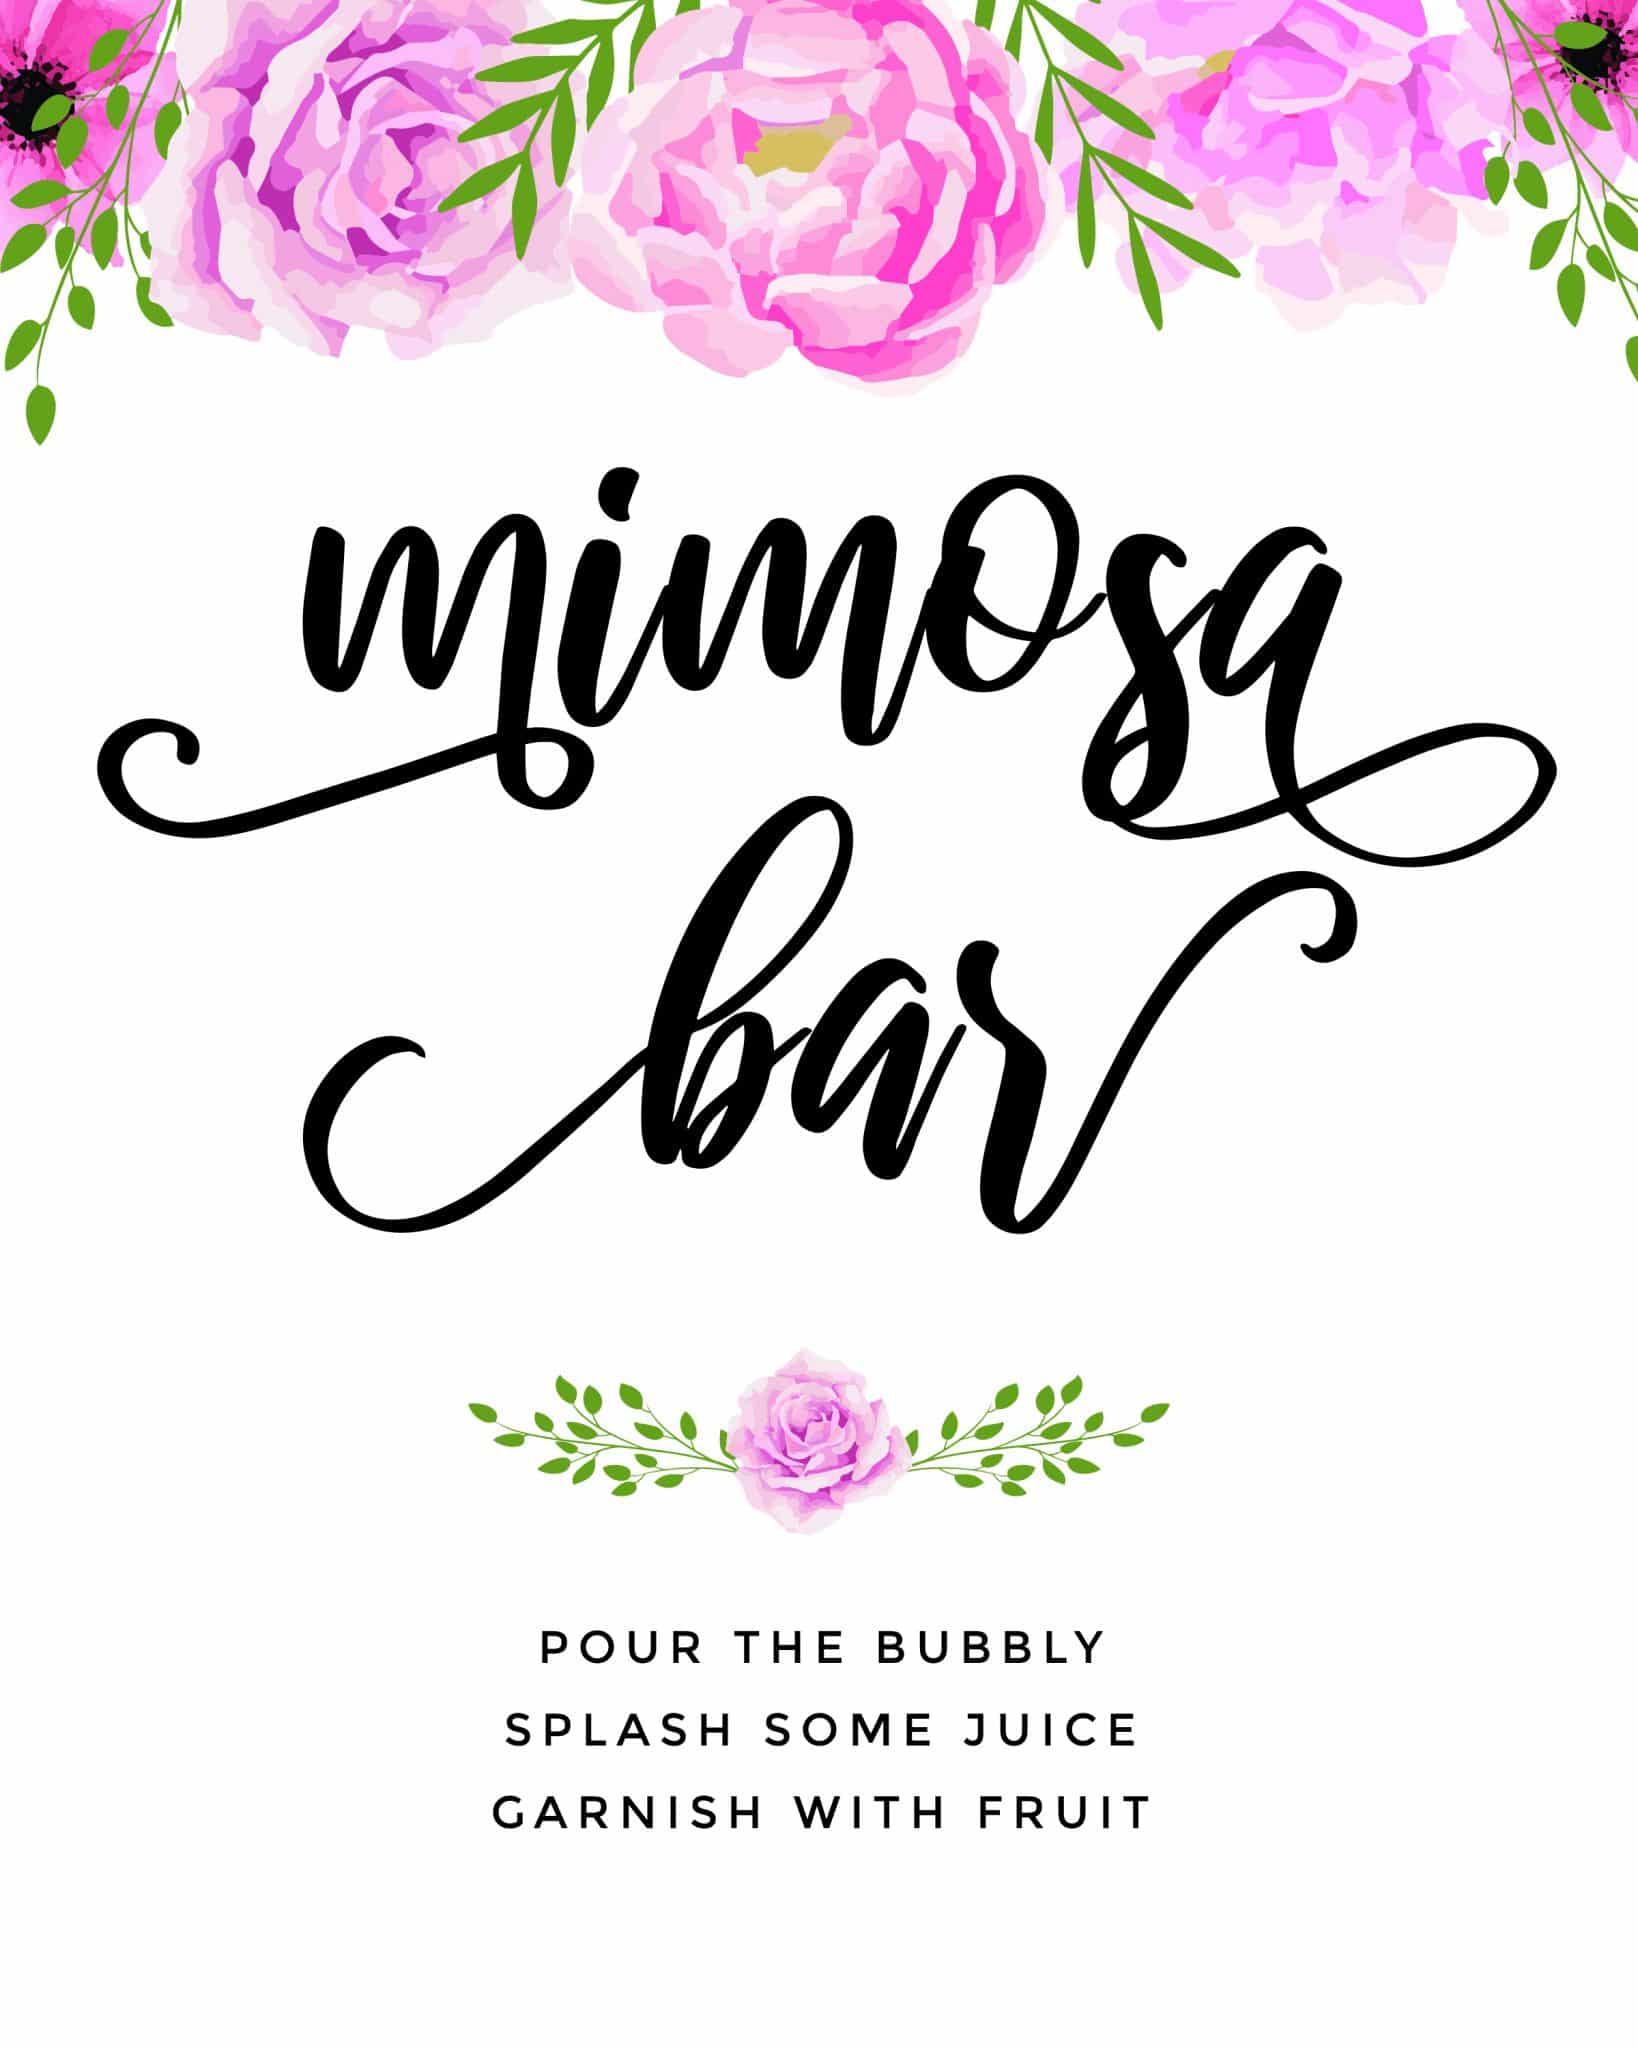 Beautiful Mimosa Bar Sign And Free Printables To Impress Tulamama